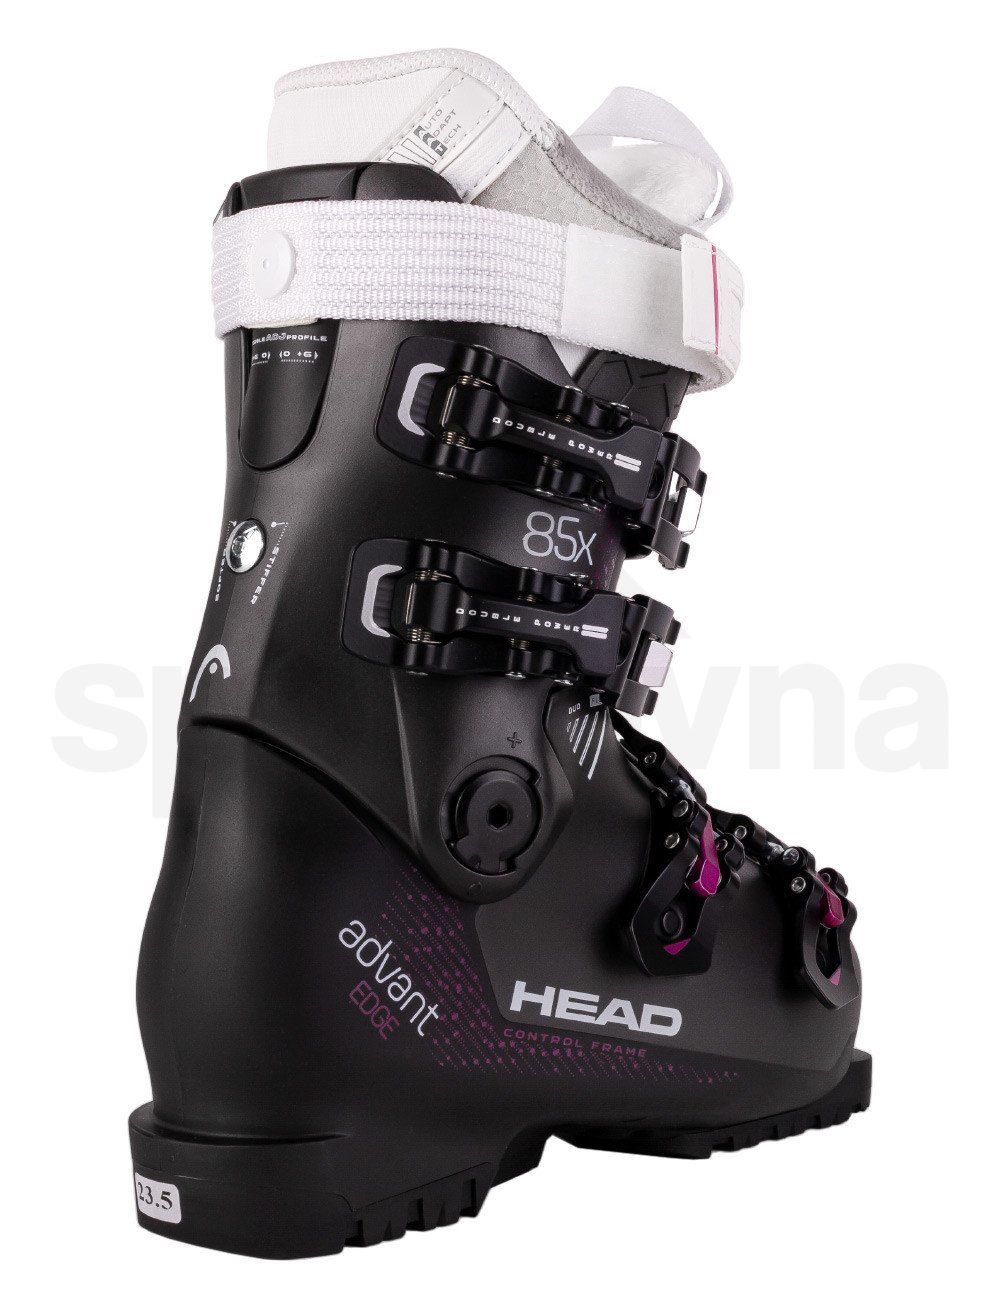 Lyžařské boty Head Advant Edge 85X W - šedá/bílá